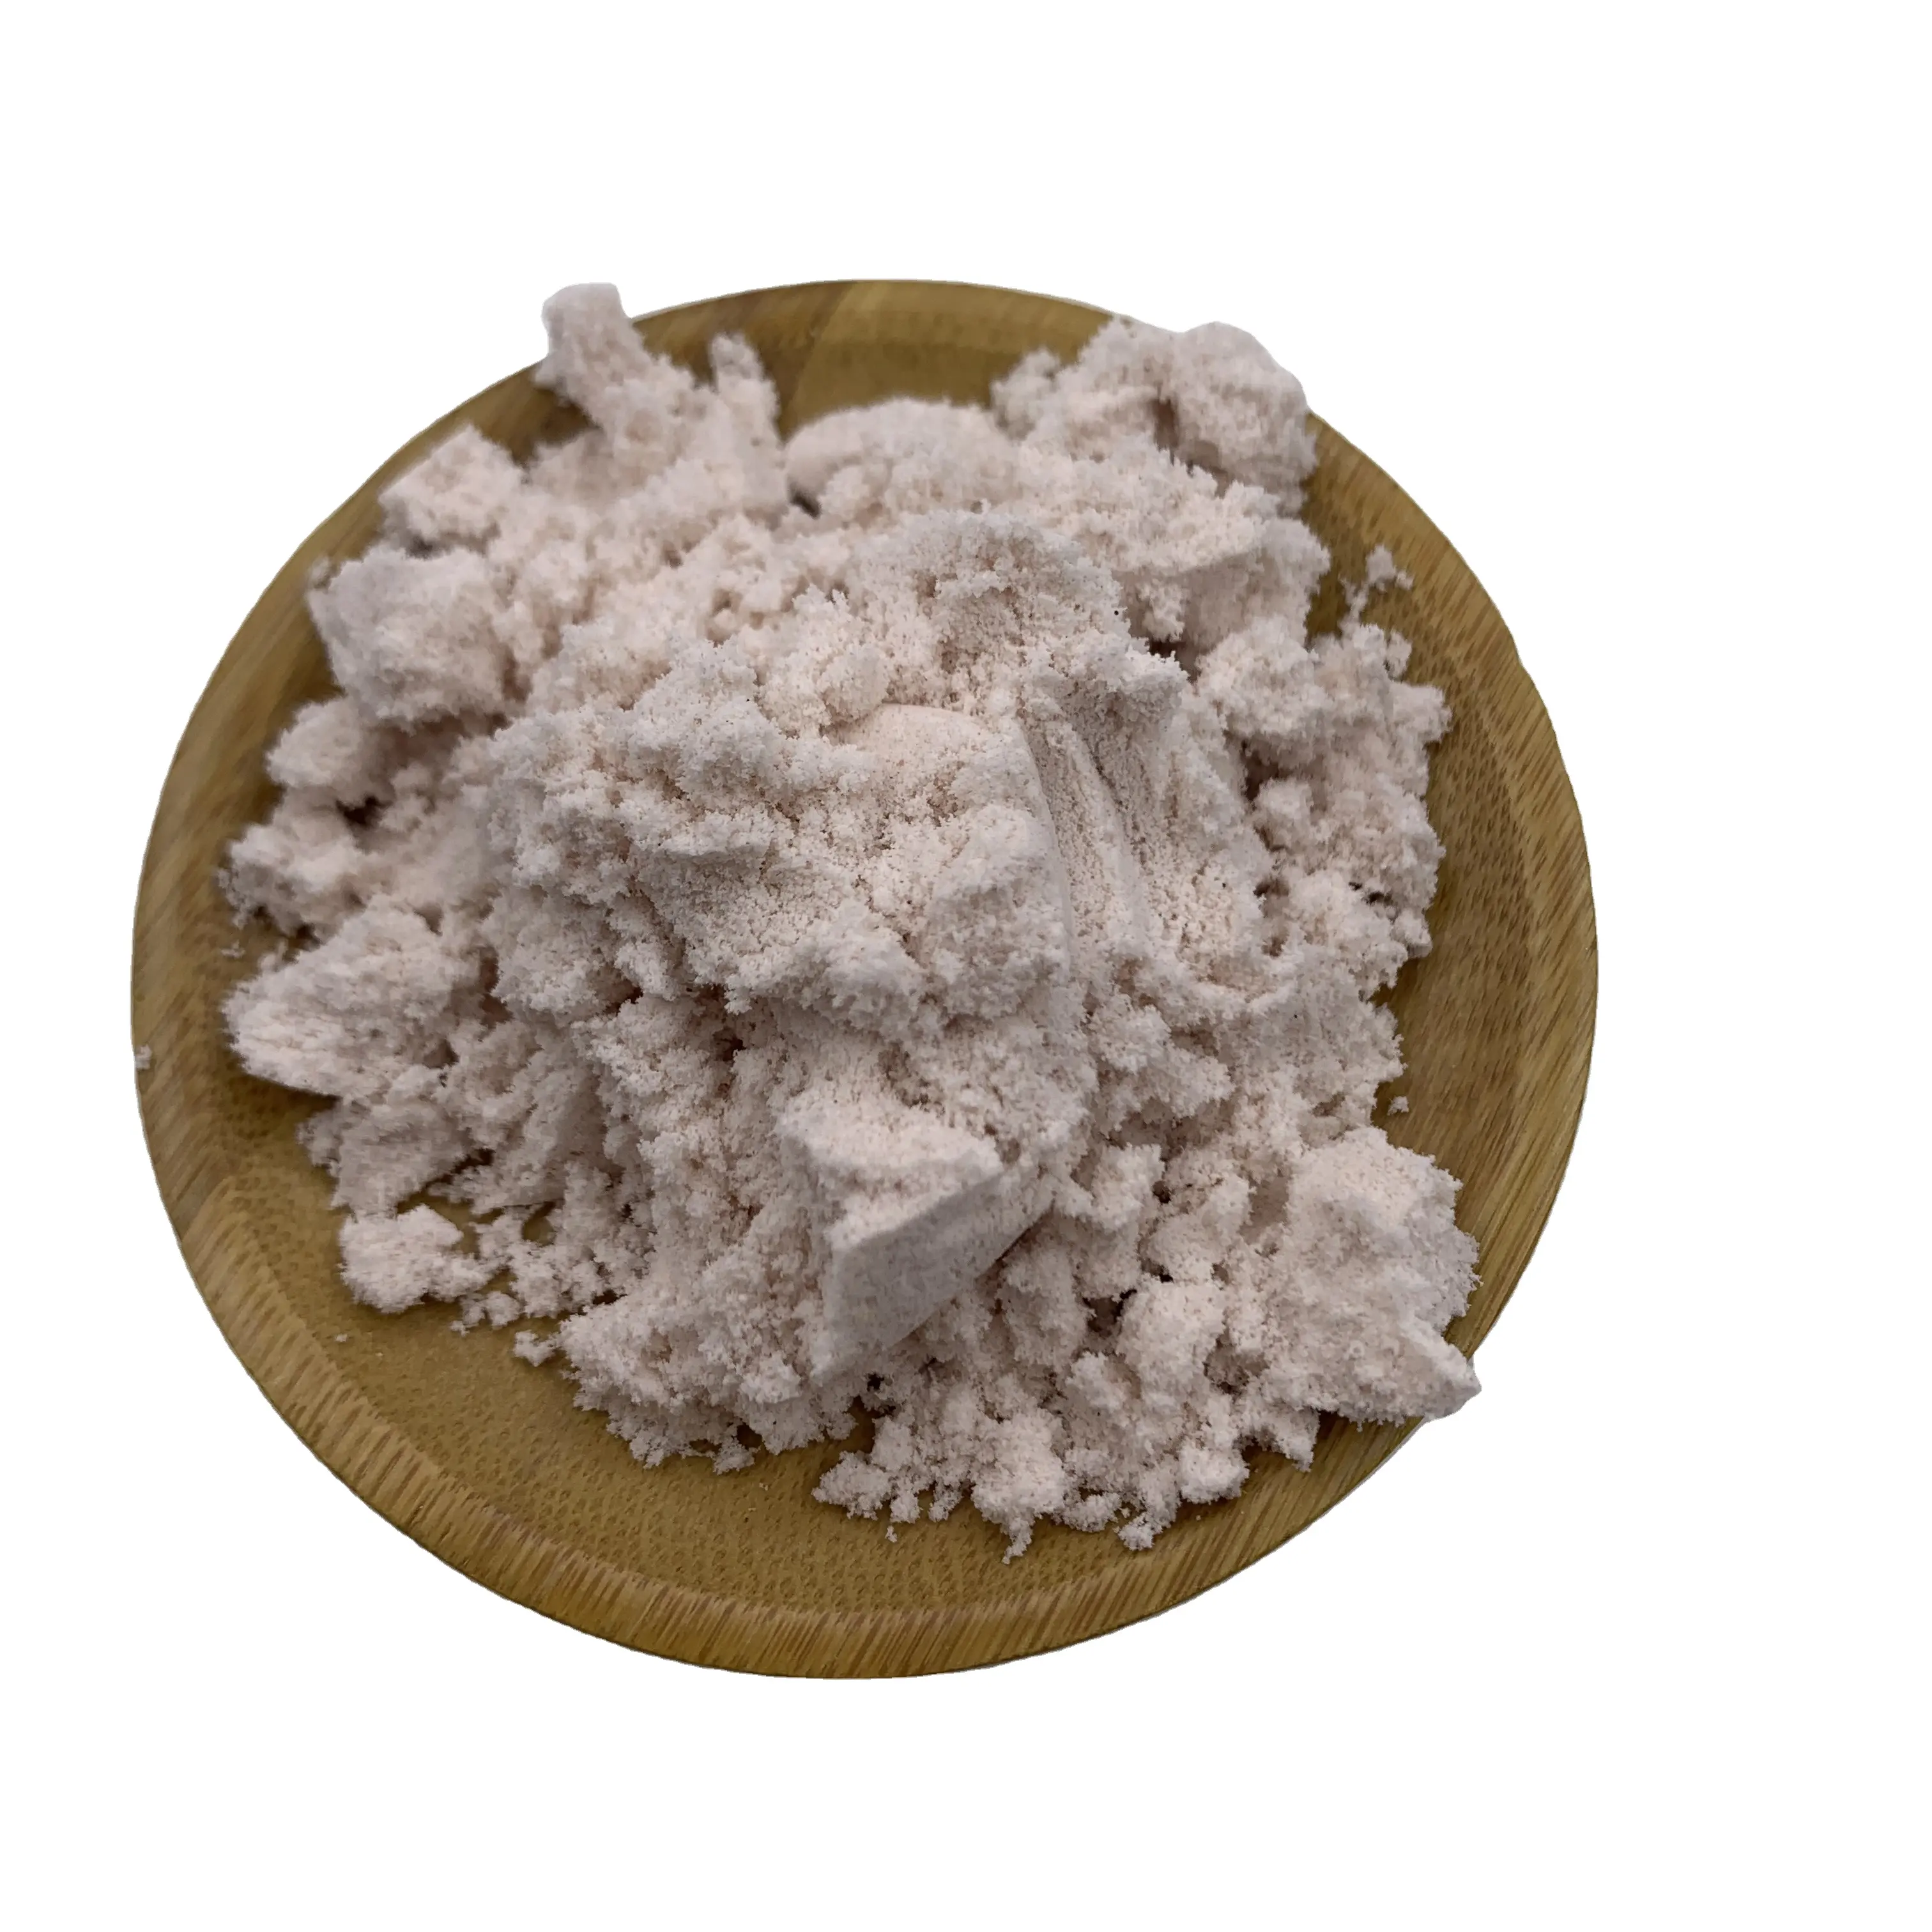 飼料グレード添加物1% 純度シアノコバラミン粉末コバラミンビタミンB12家禽用